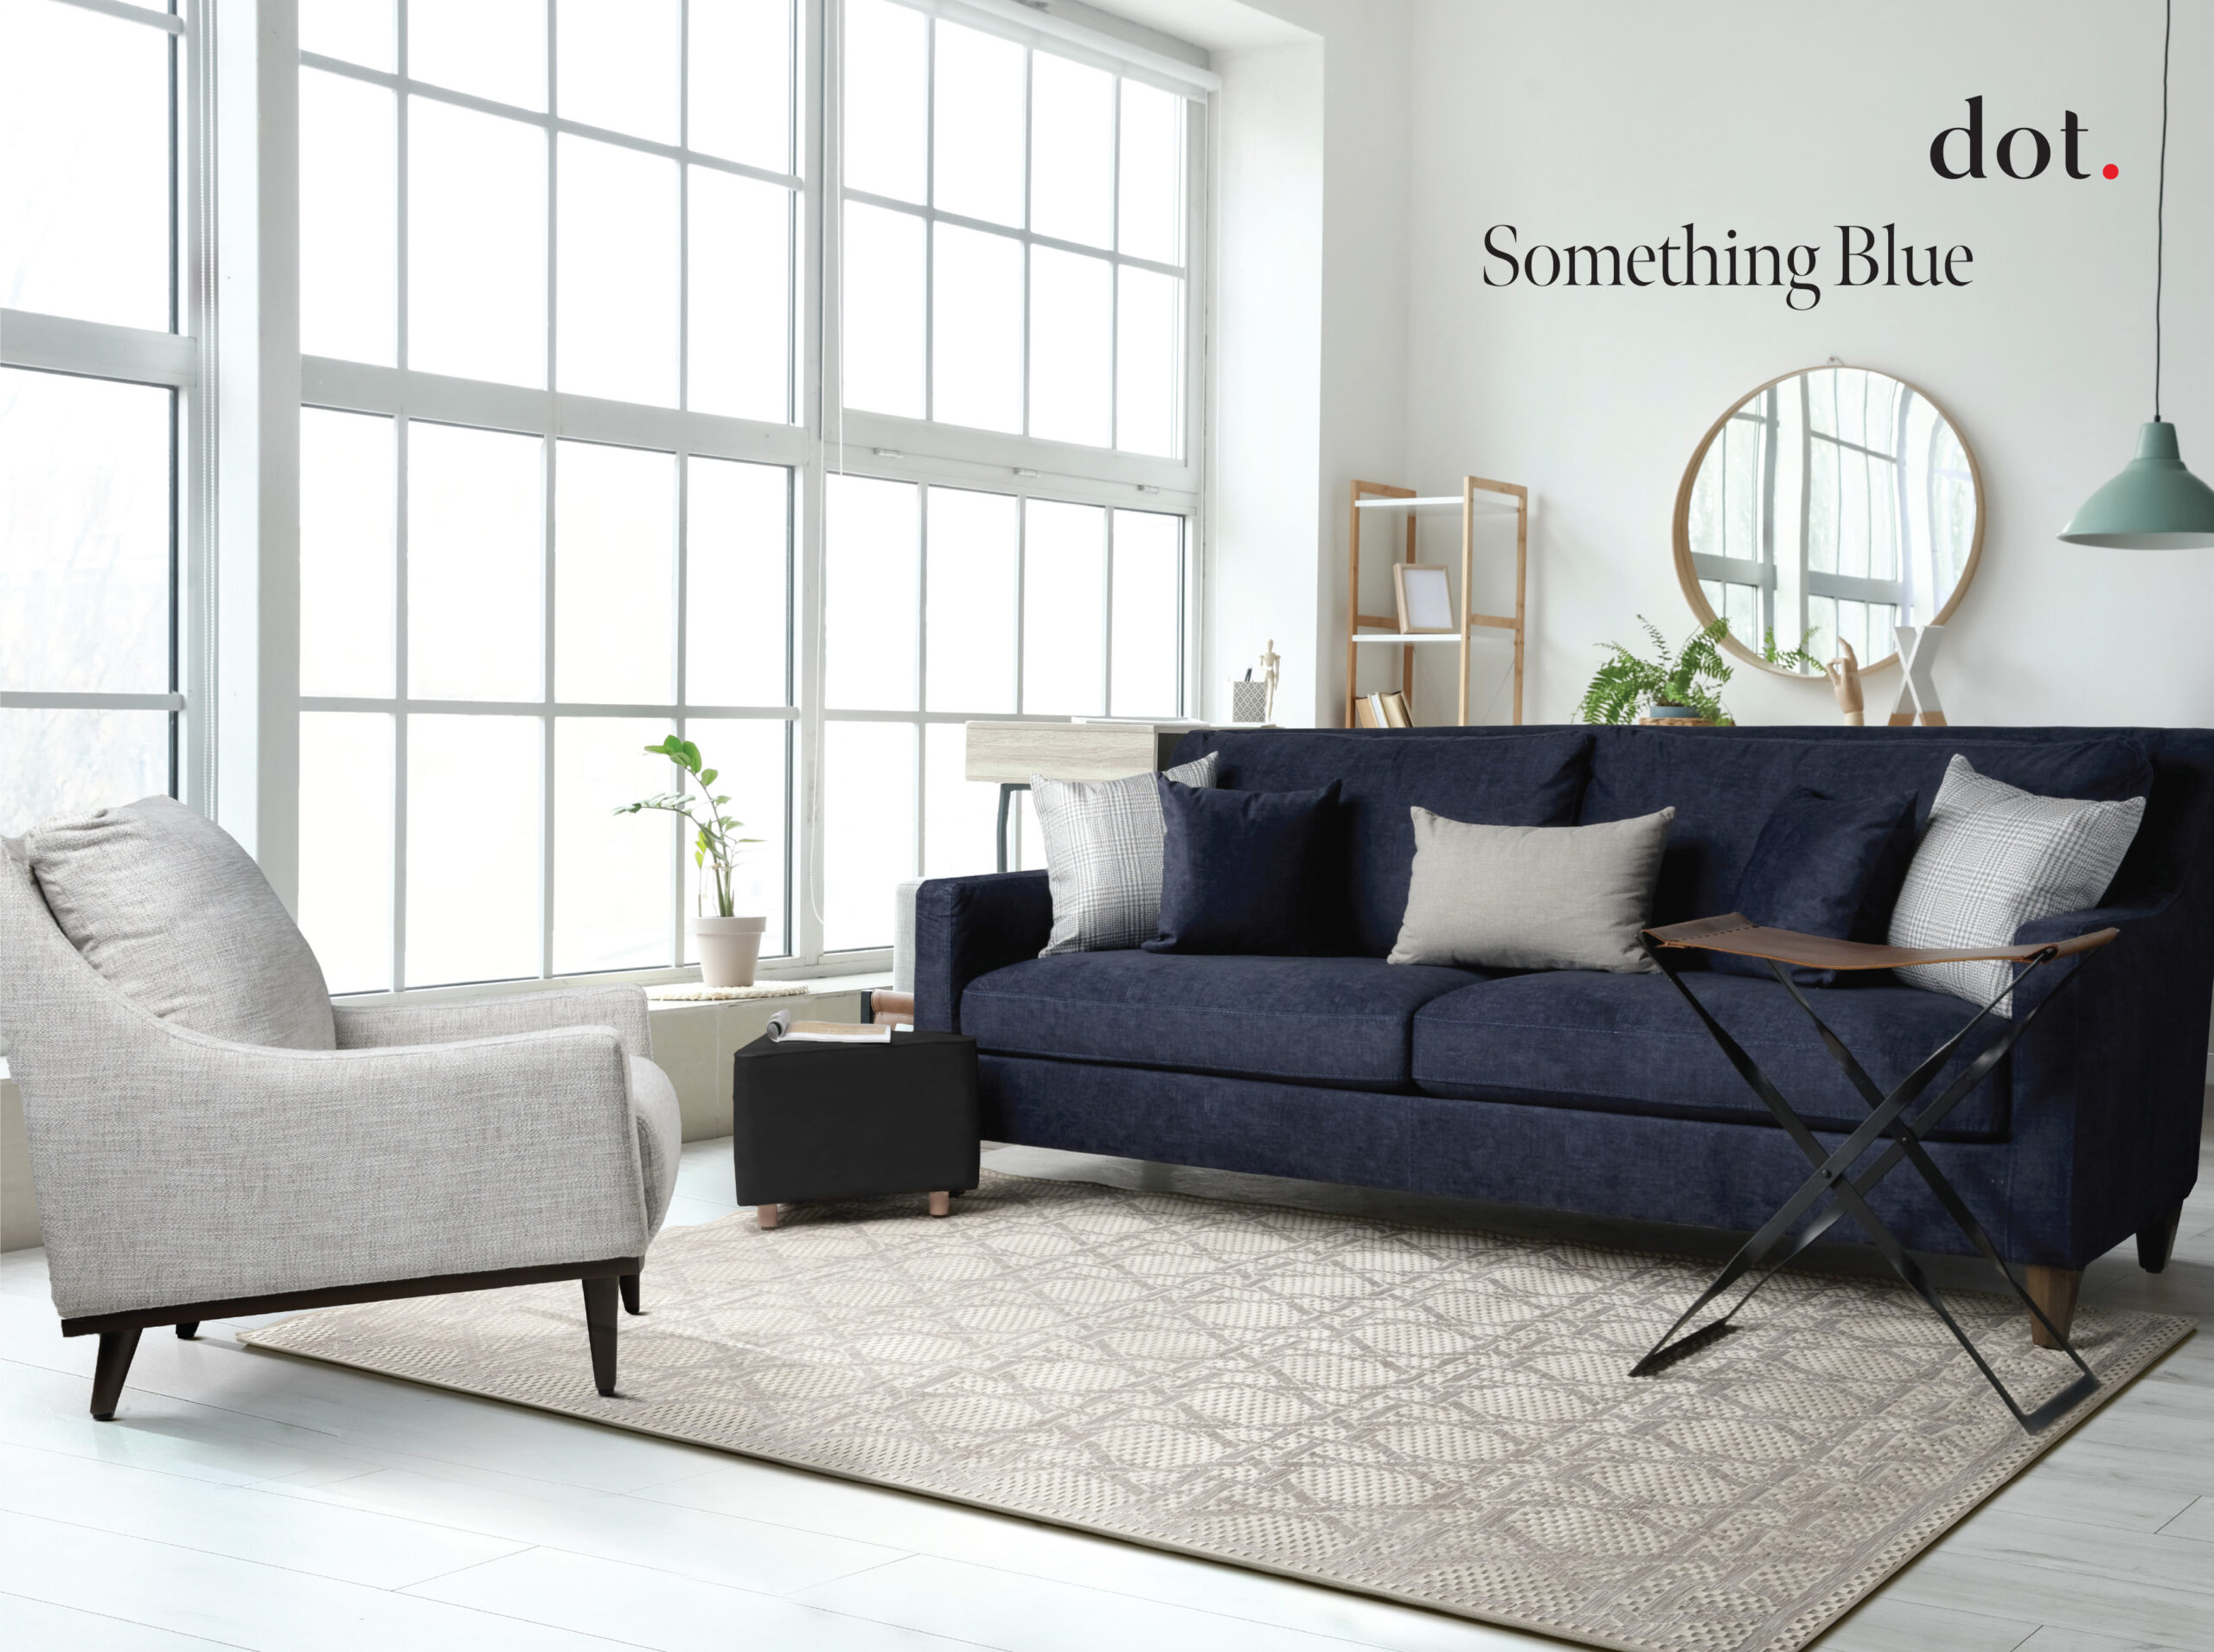 dot Furniture Logo and Living Room set